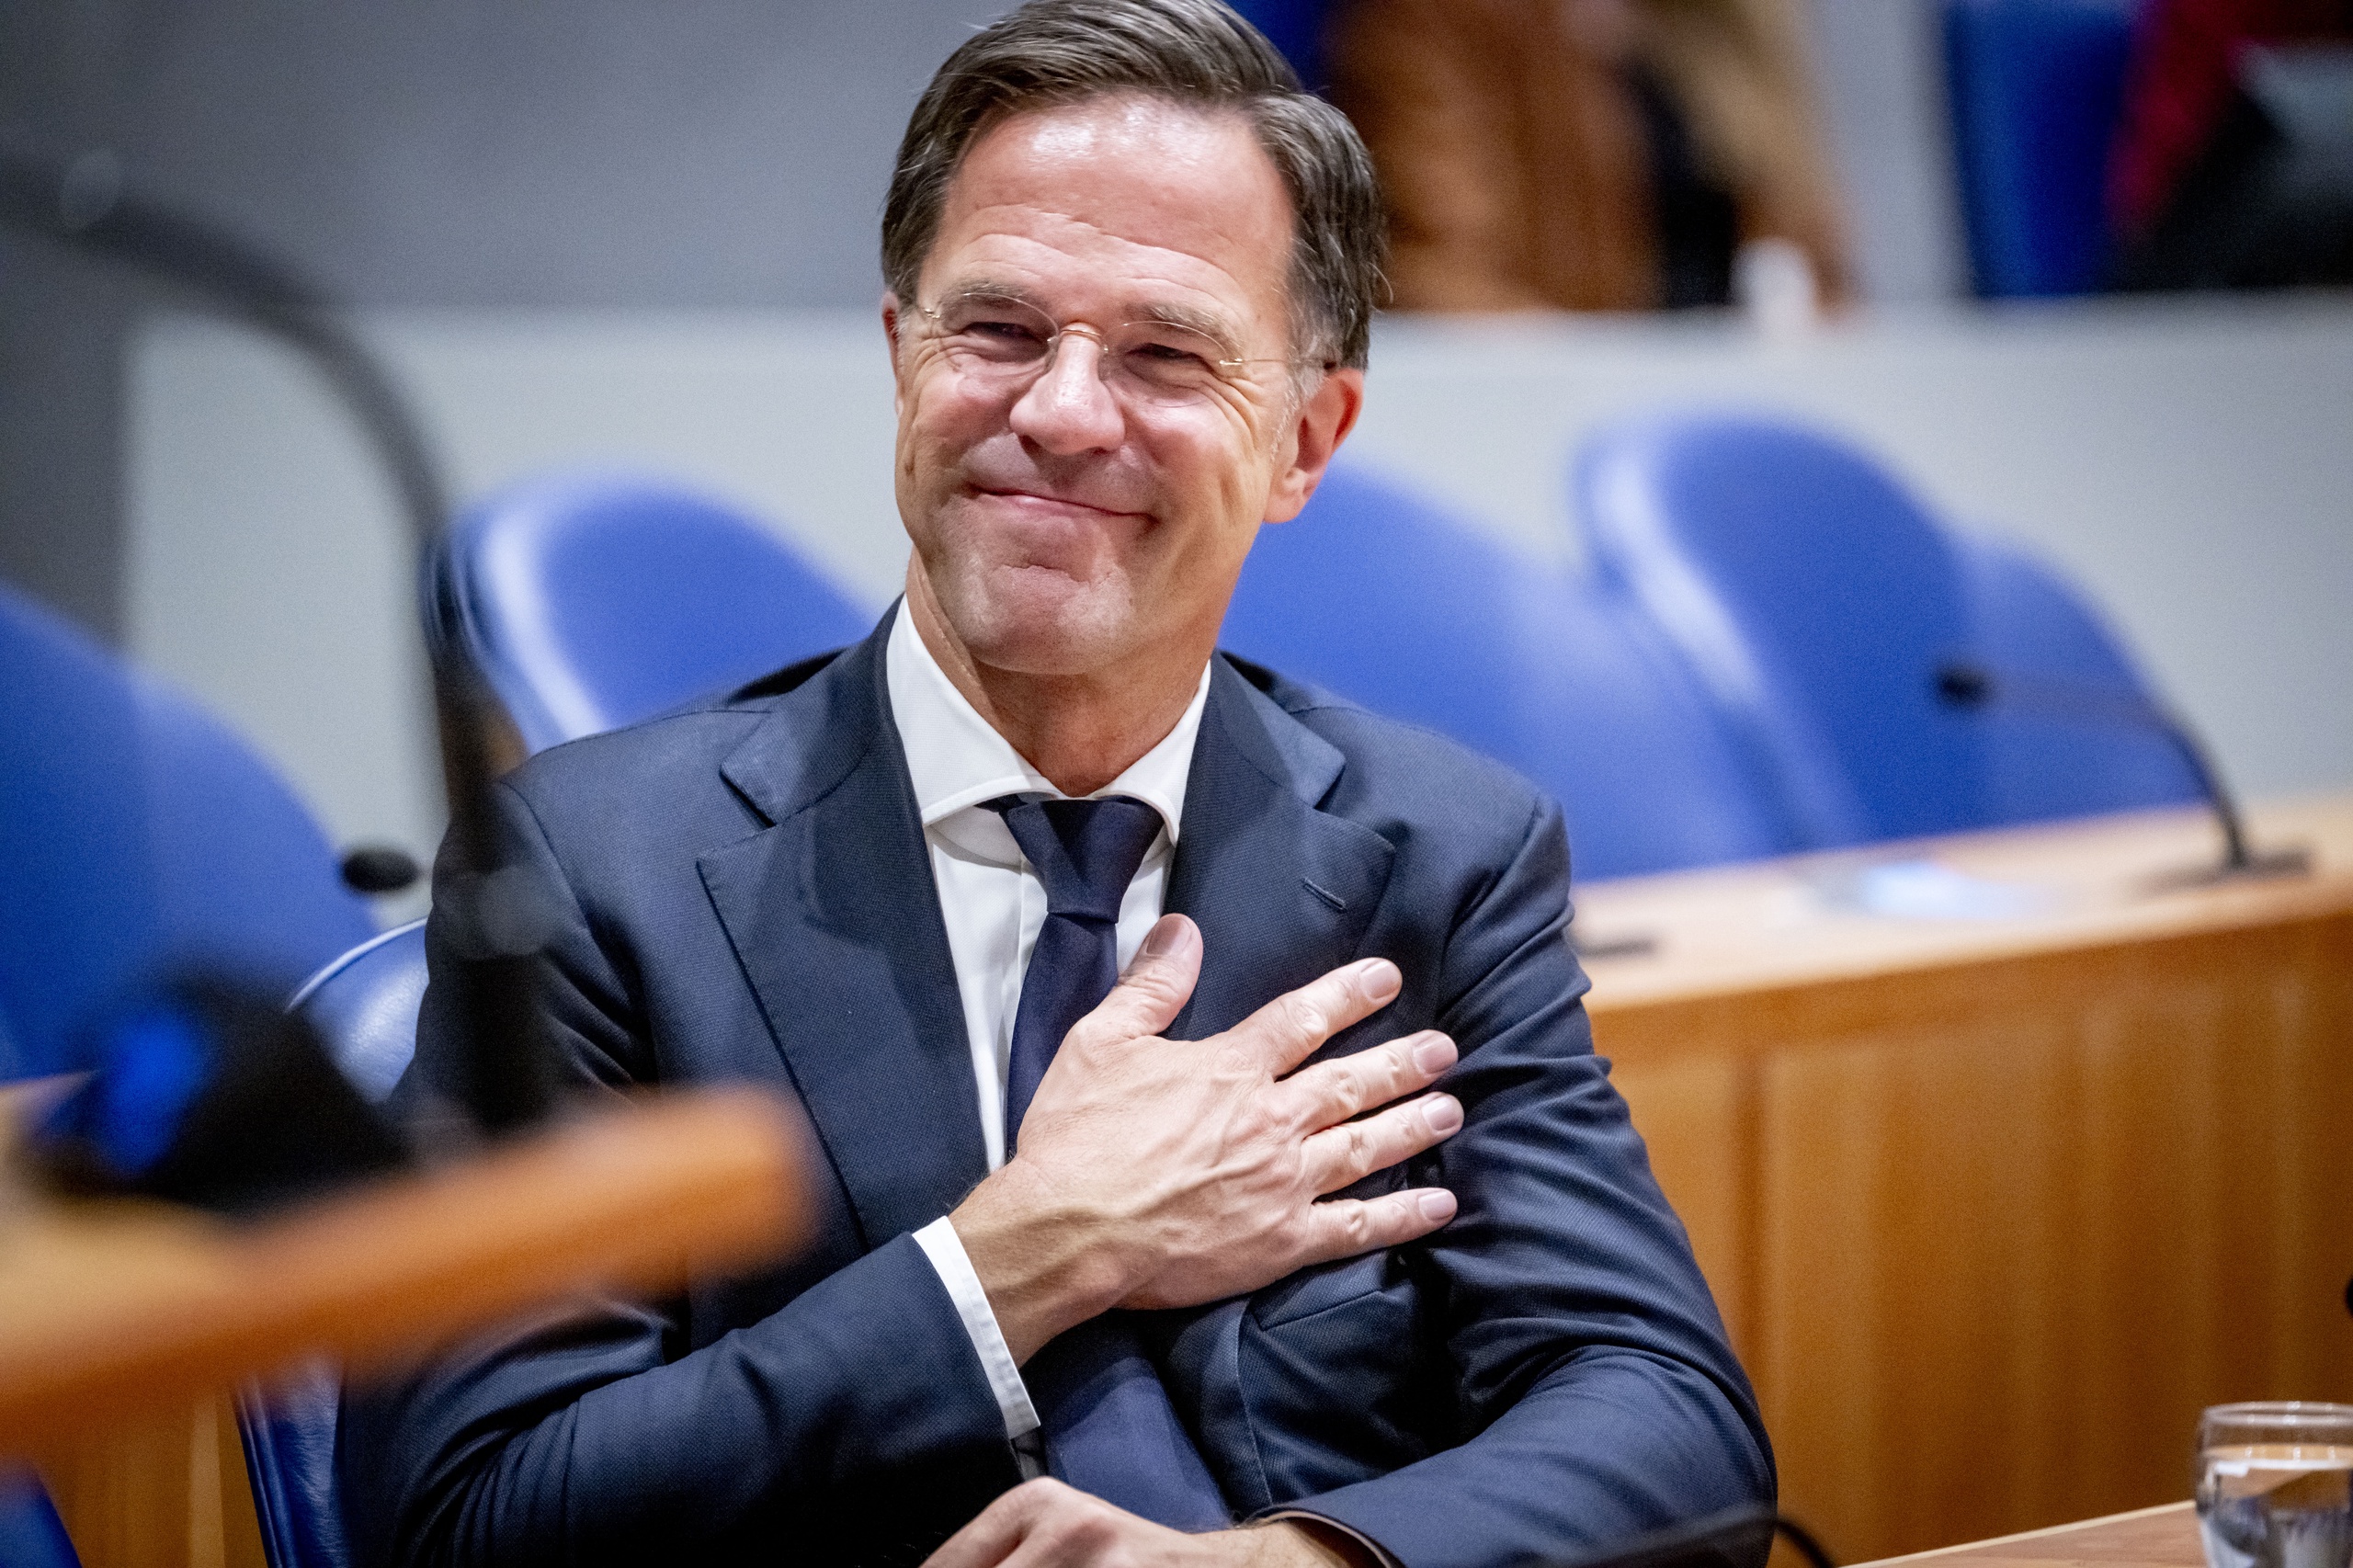 Na dertien jaar komt er een einde aan de regeerperiode van premier Mark Rutte, en daarmee komt er een tijdperk ten einde. Dat vindt hoogleraar Arnoud Boot. 'Het zat er al twee jaar aan te komen', duidt hij.